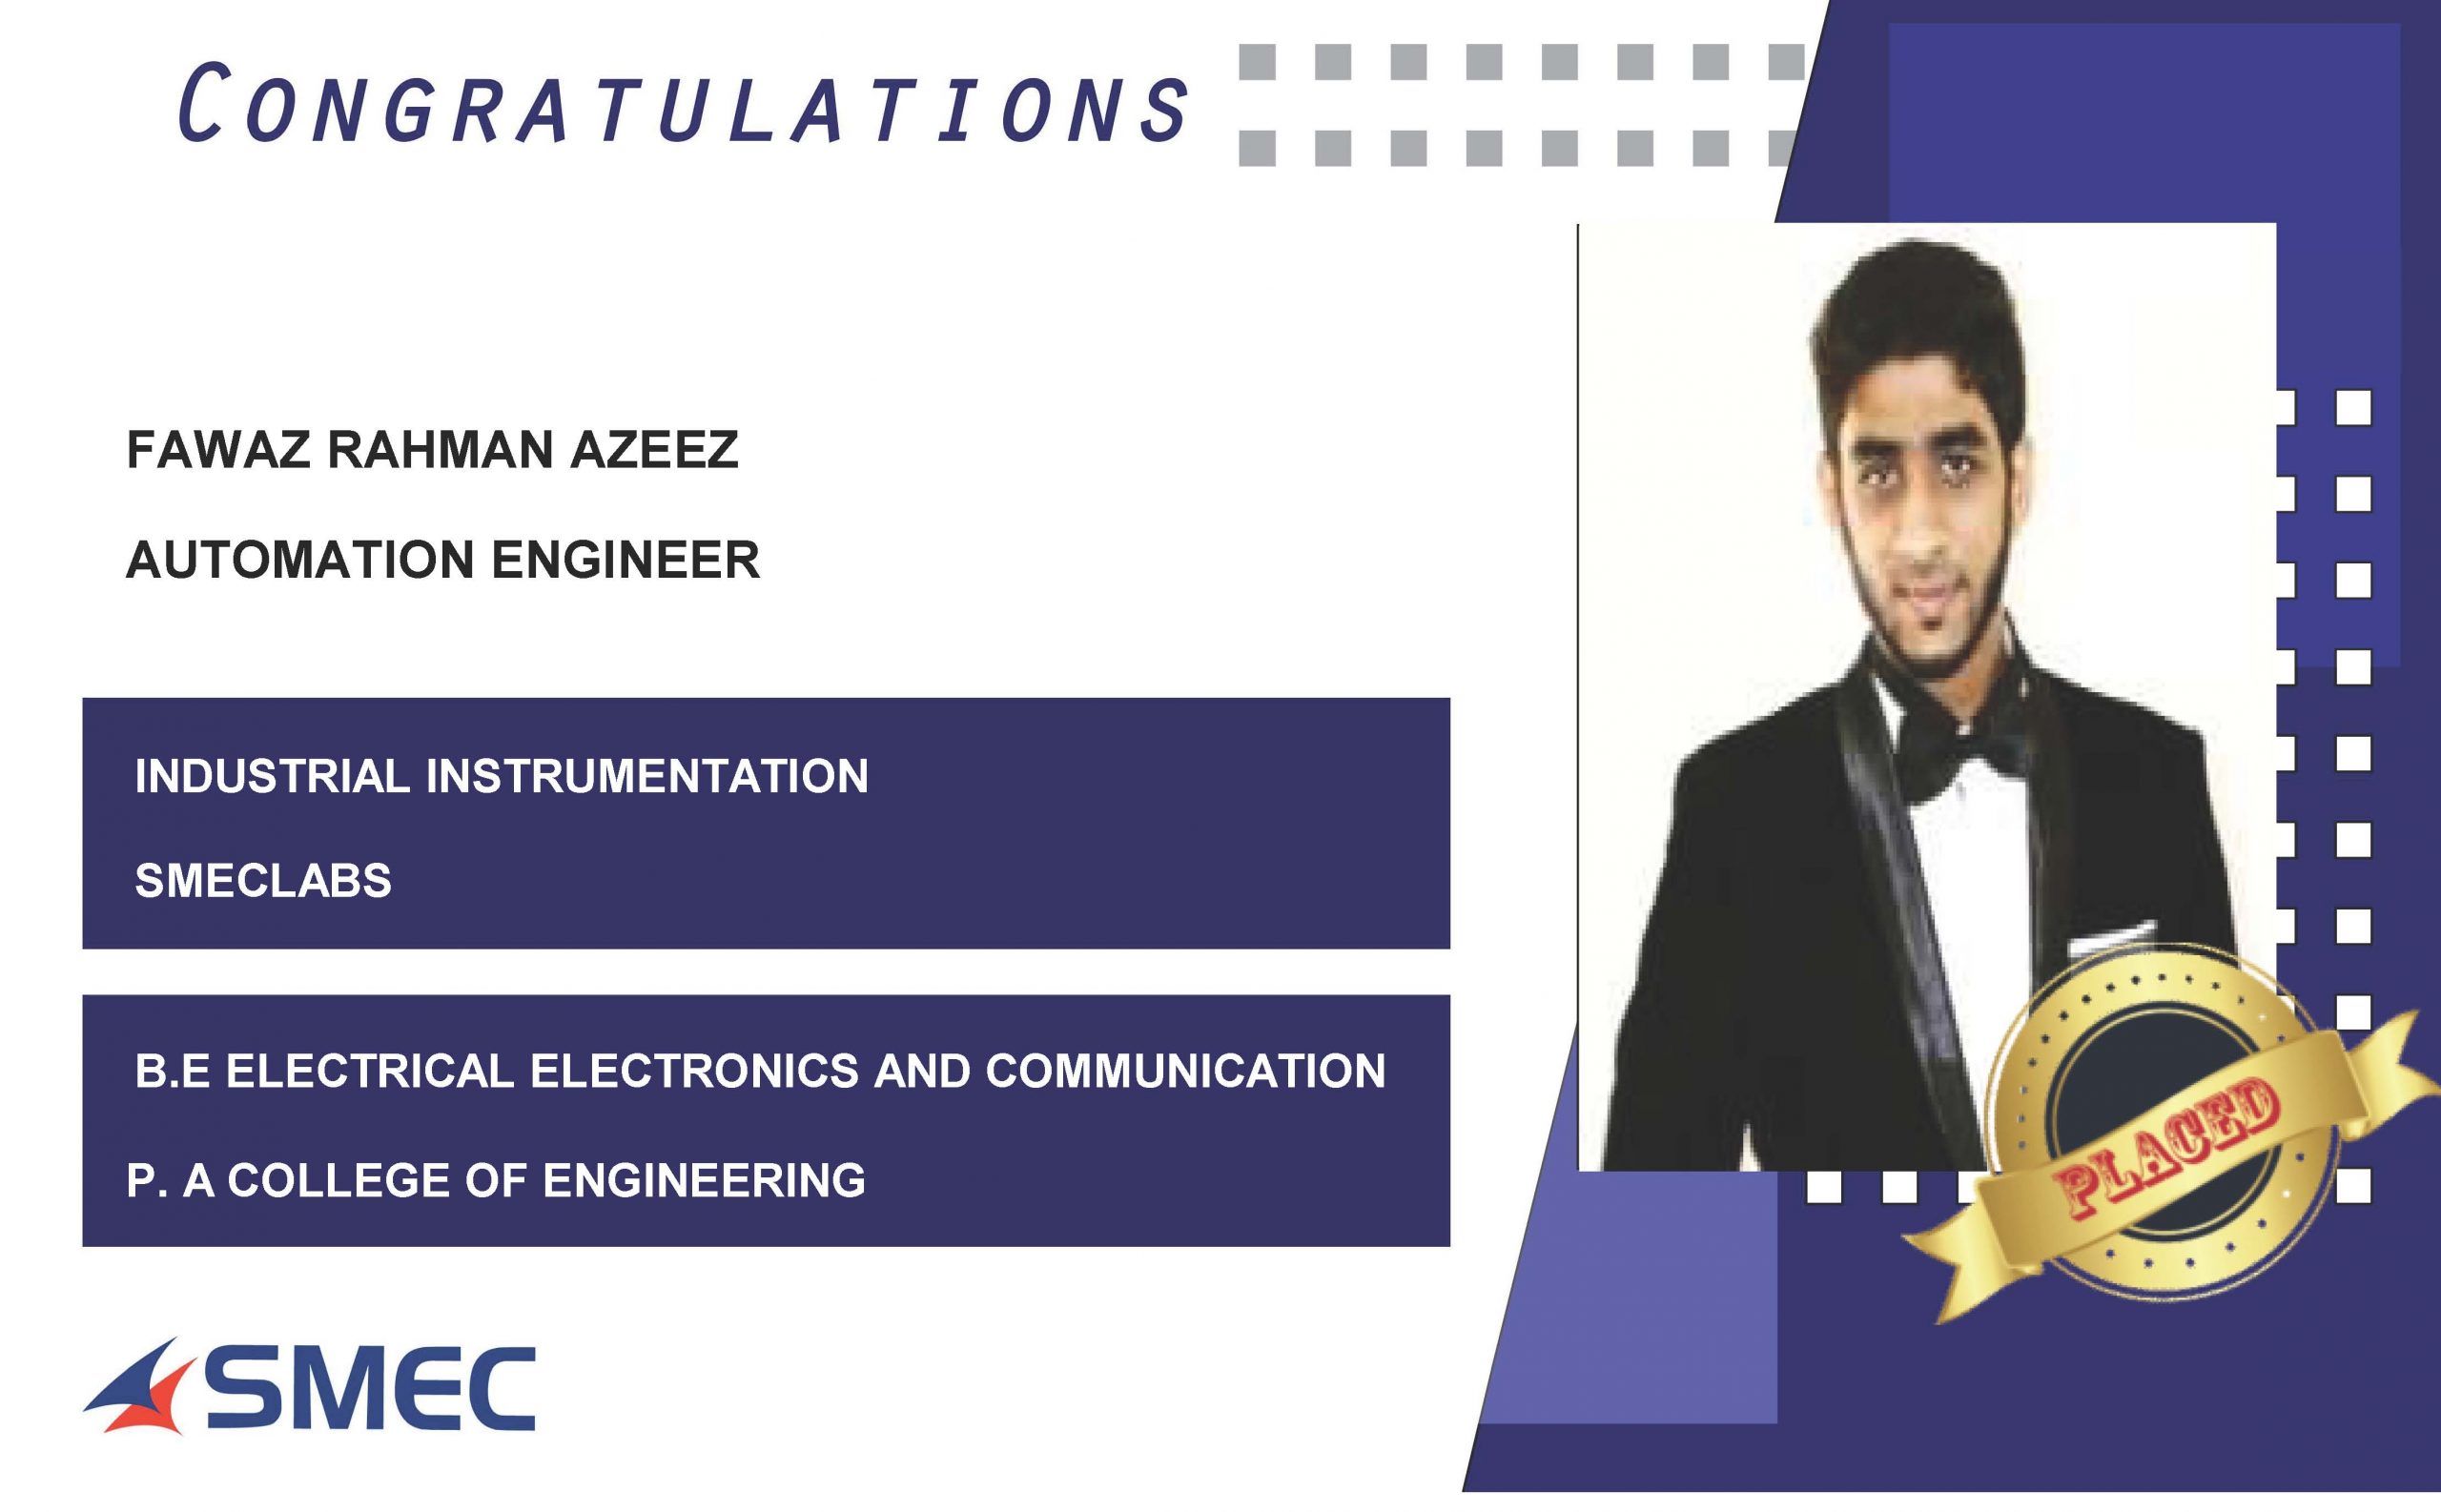 Fawaz Rahman Azeez Placed Successfully as Automation Engineer